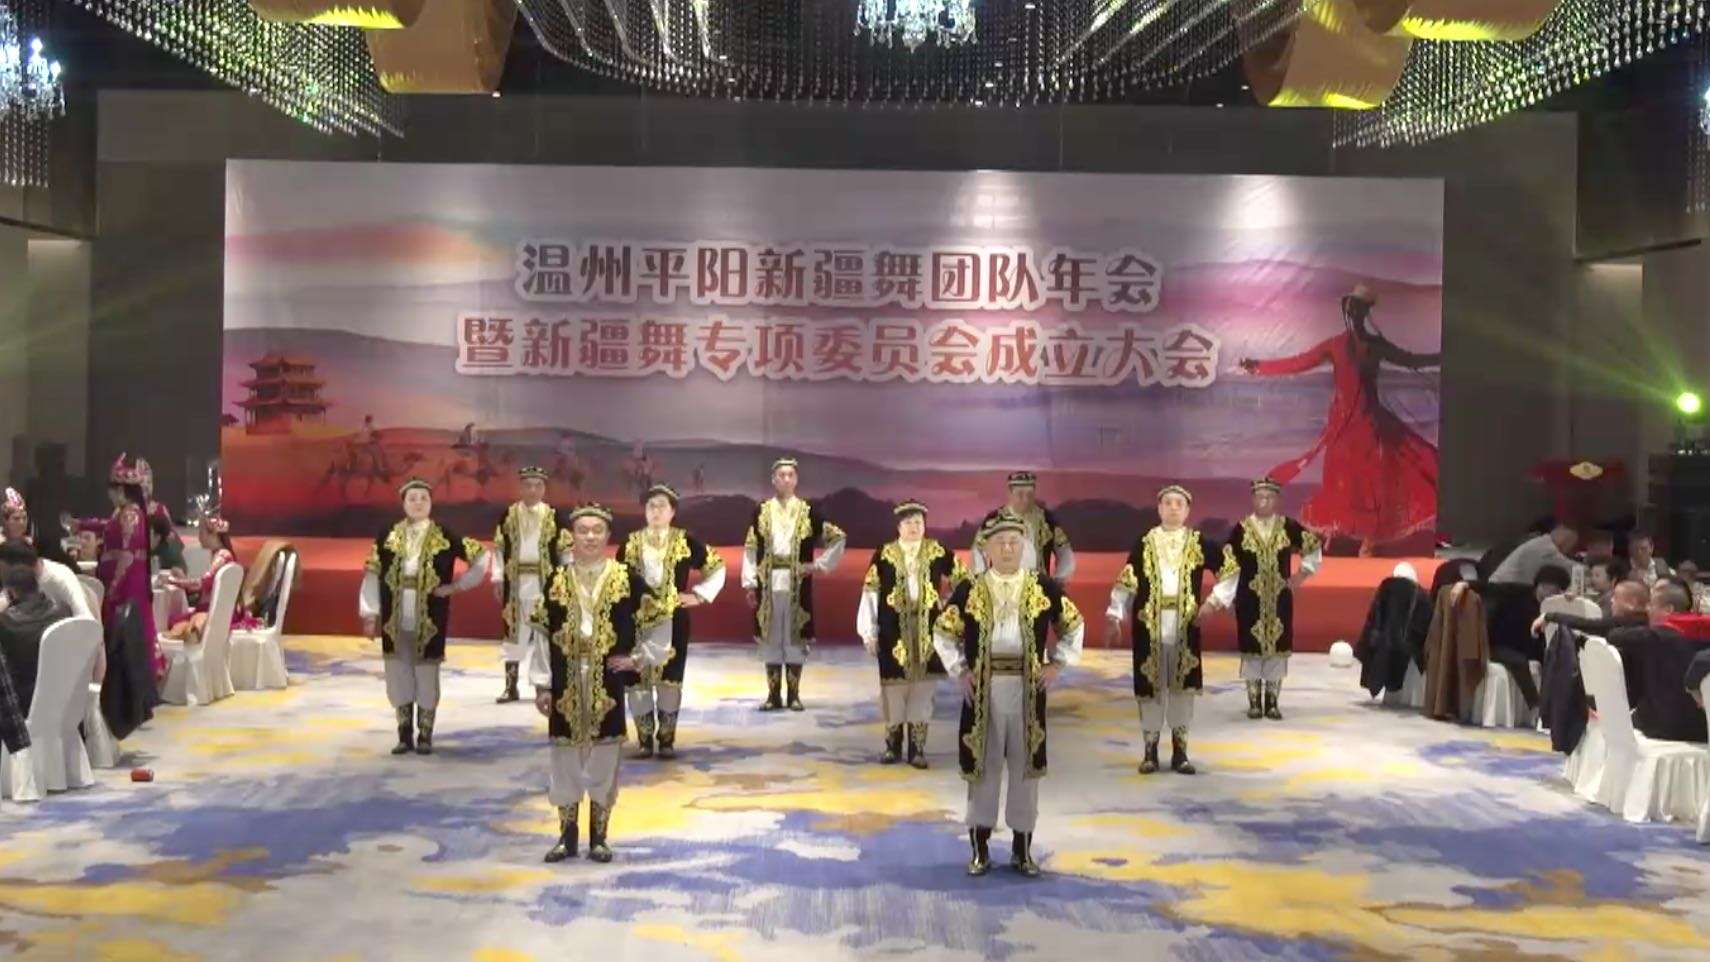 15-新疆舞:男子组合